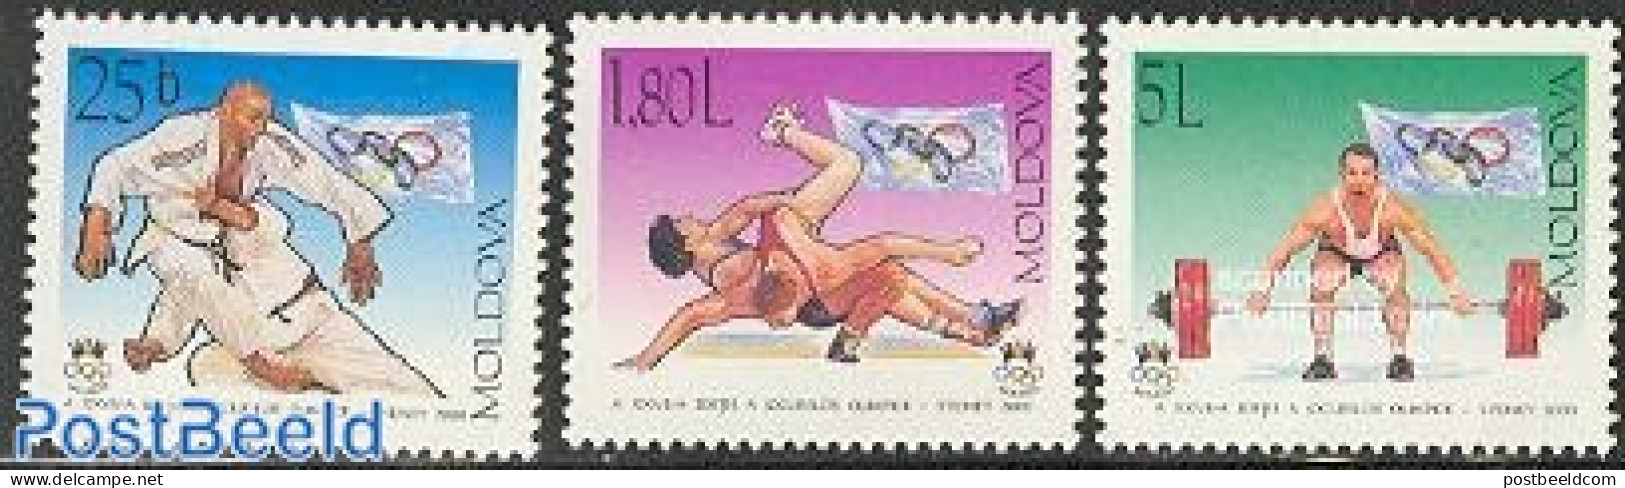 Moldova 2000 Olympic Games Sydney 3v, Mint NH, Sport - Judo - Olympic Games - Weightlifting - Weightlifting